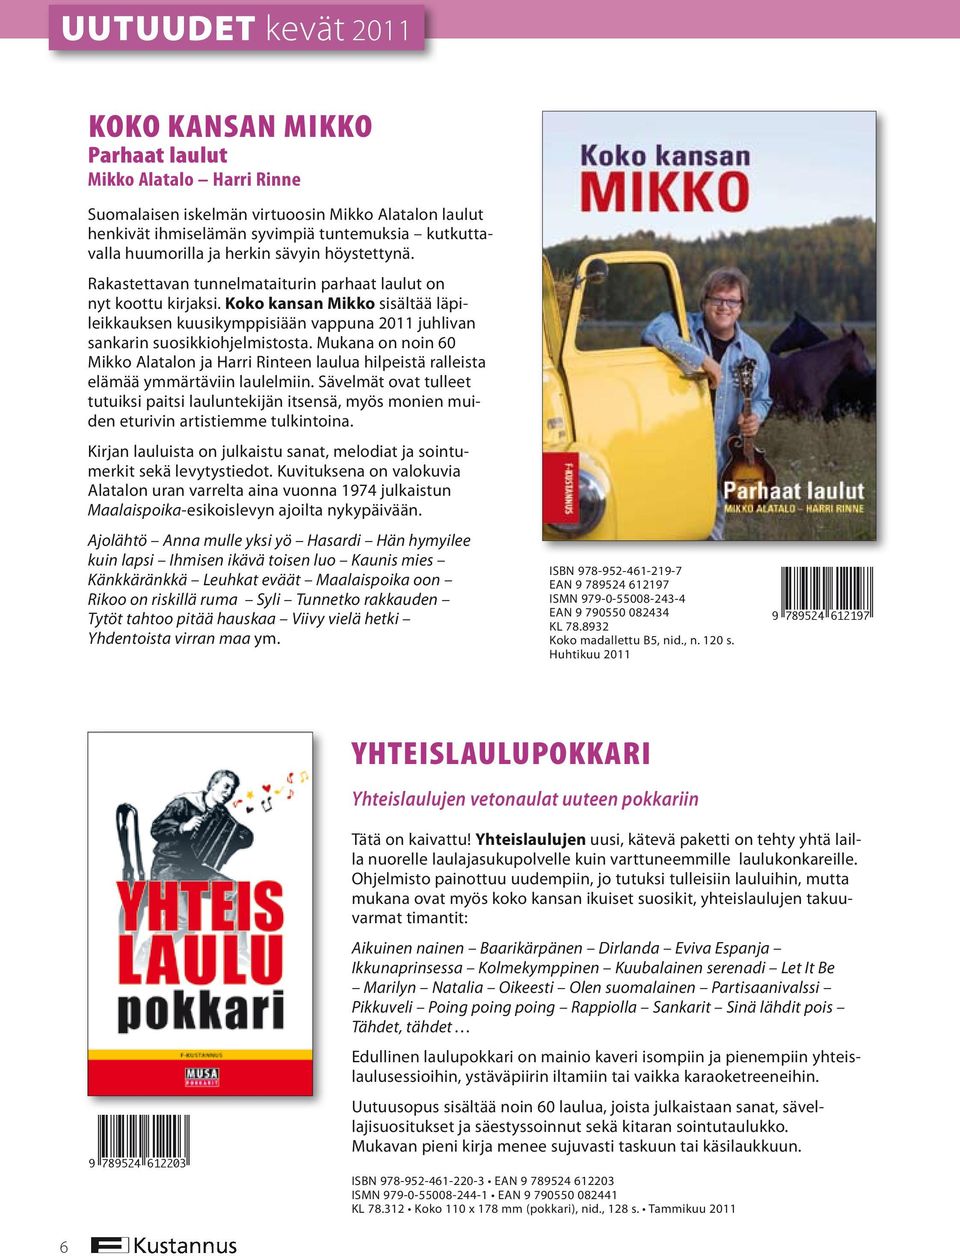 Koko kansan Mikko sisältää läpileikkauk sen kuusikymppisiään vappuna 2011 juhlivan sankarin suosikkiohjelmistosta.